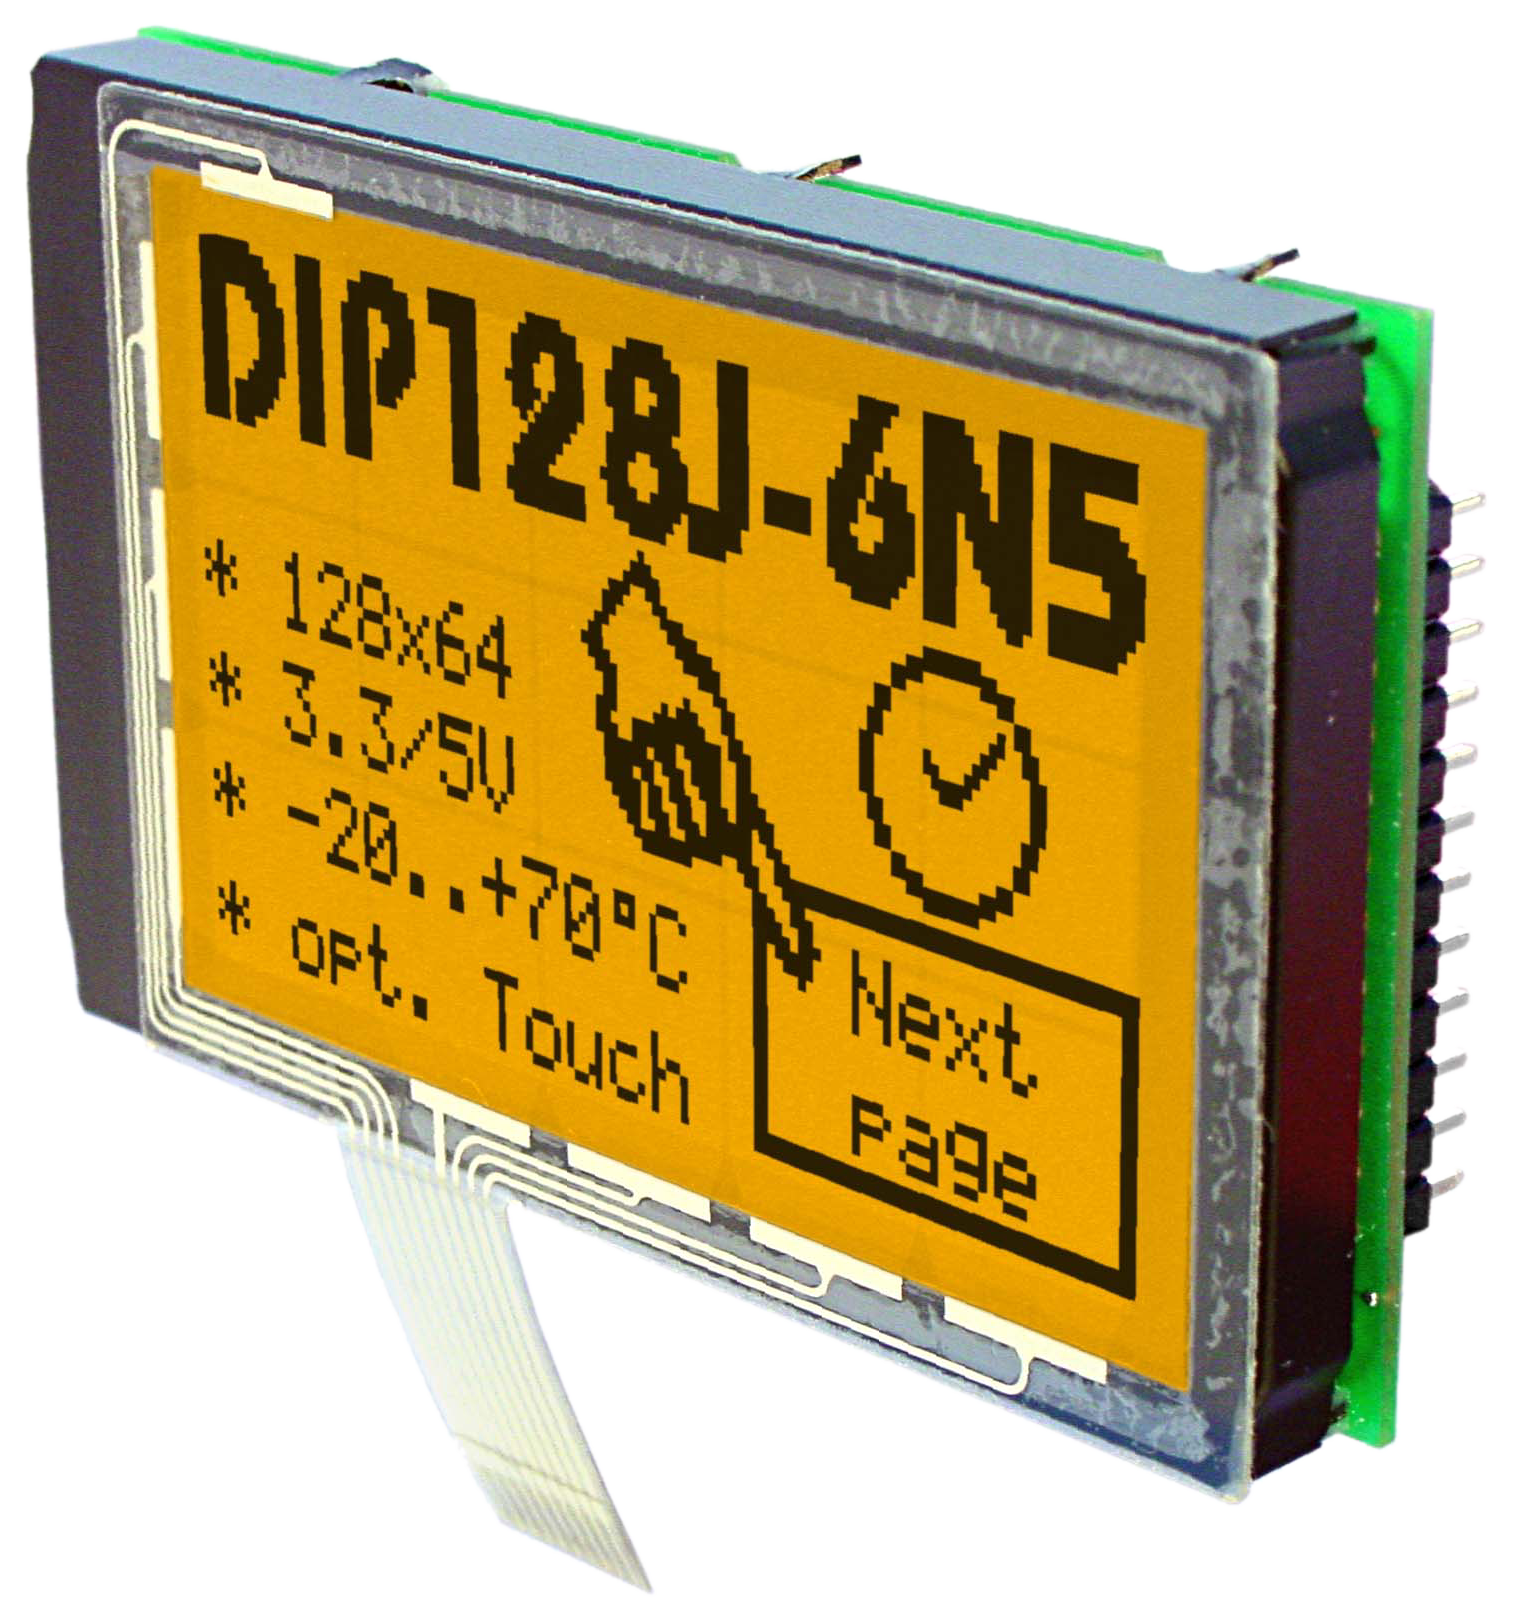 128x64 DIP Grafikdisplay mit Touch